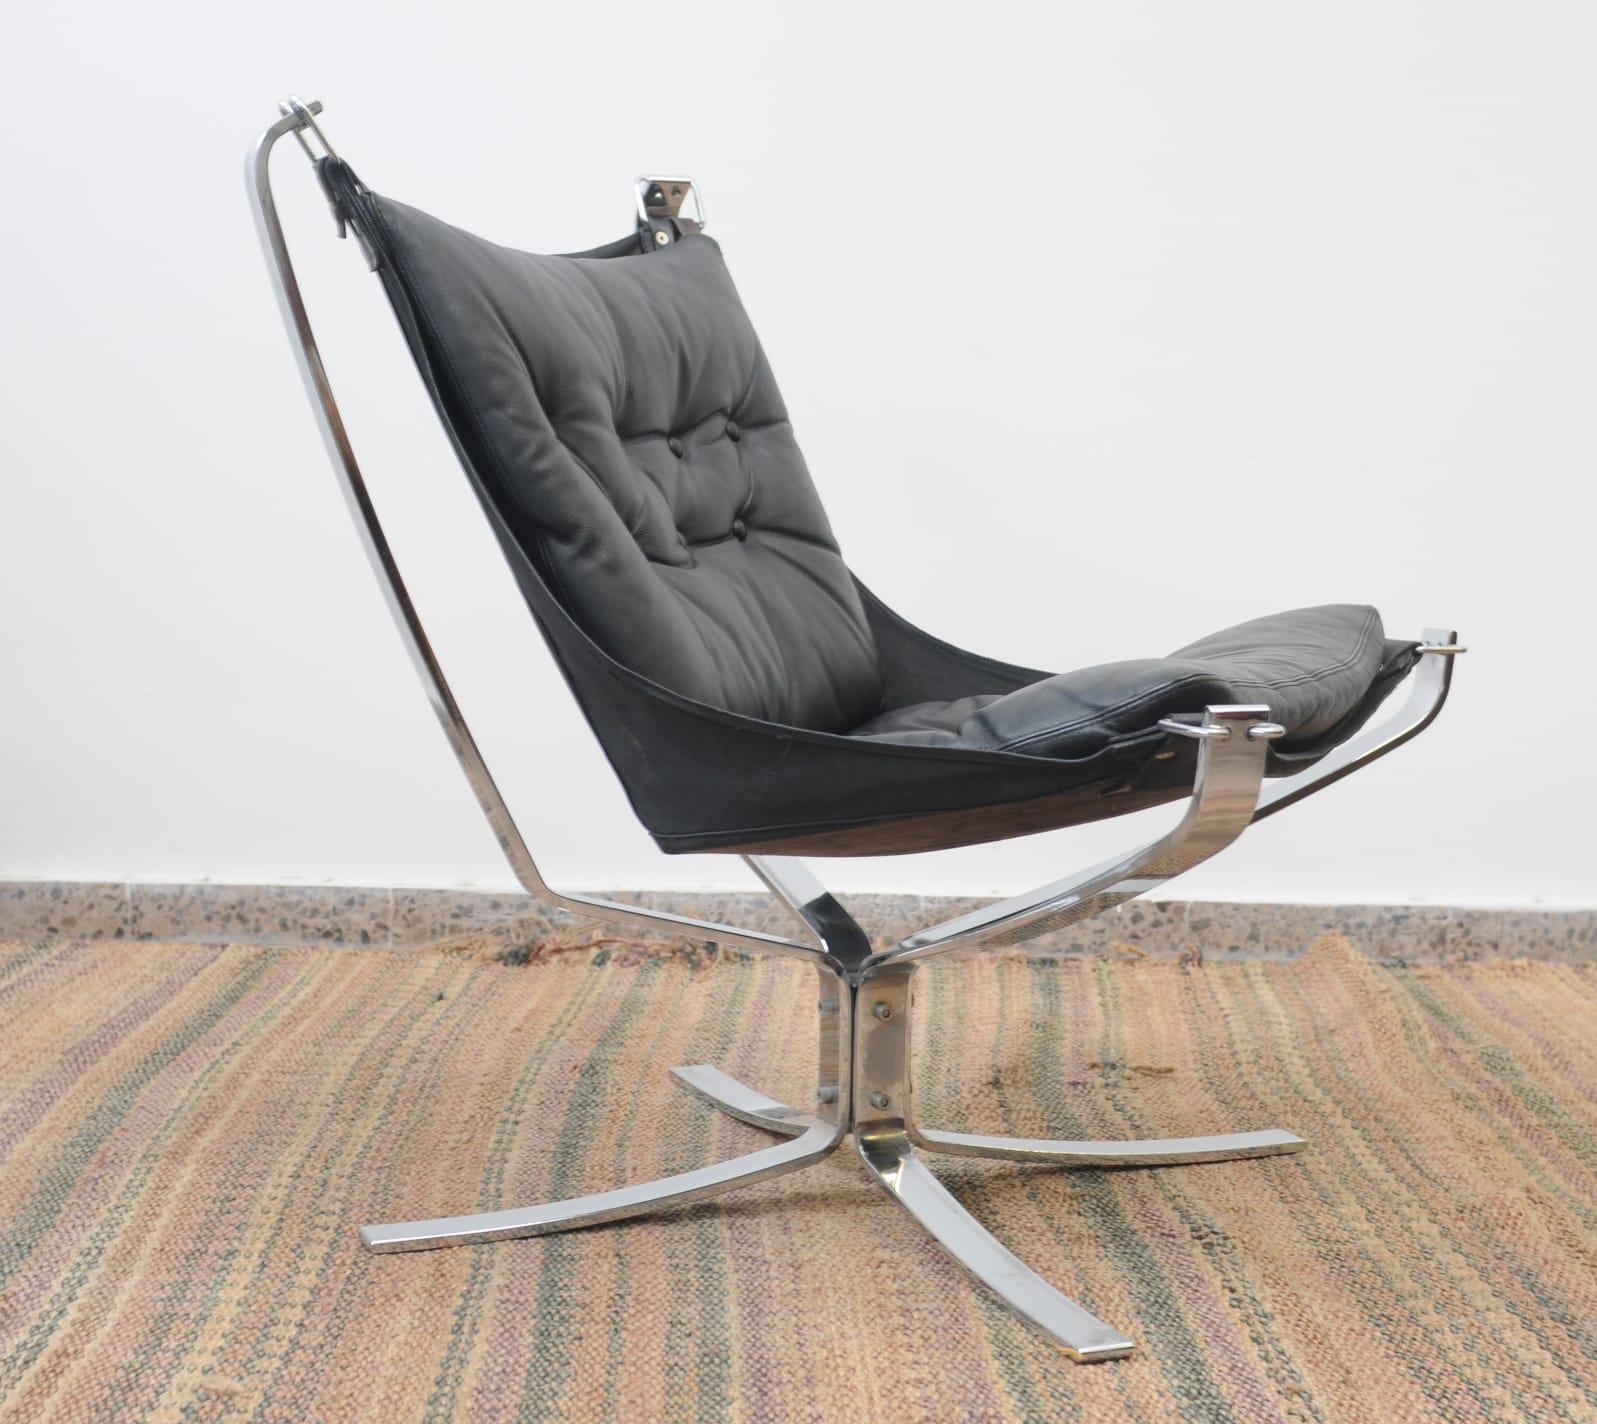 Seltene und schöne Metall-Chrom-Gestell skandinavischen Lounge Falcon Stühle von Sigurd Ressell etwa Anfang bis Mitte der 1970er Jahre entworfen
Das Modell 